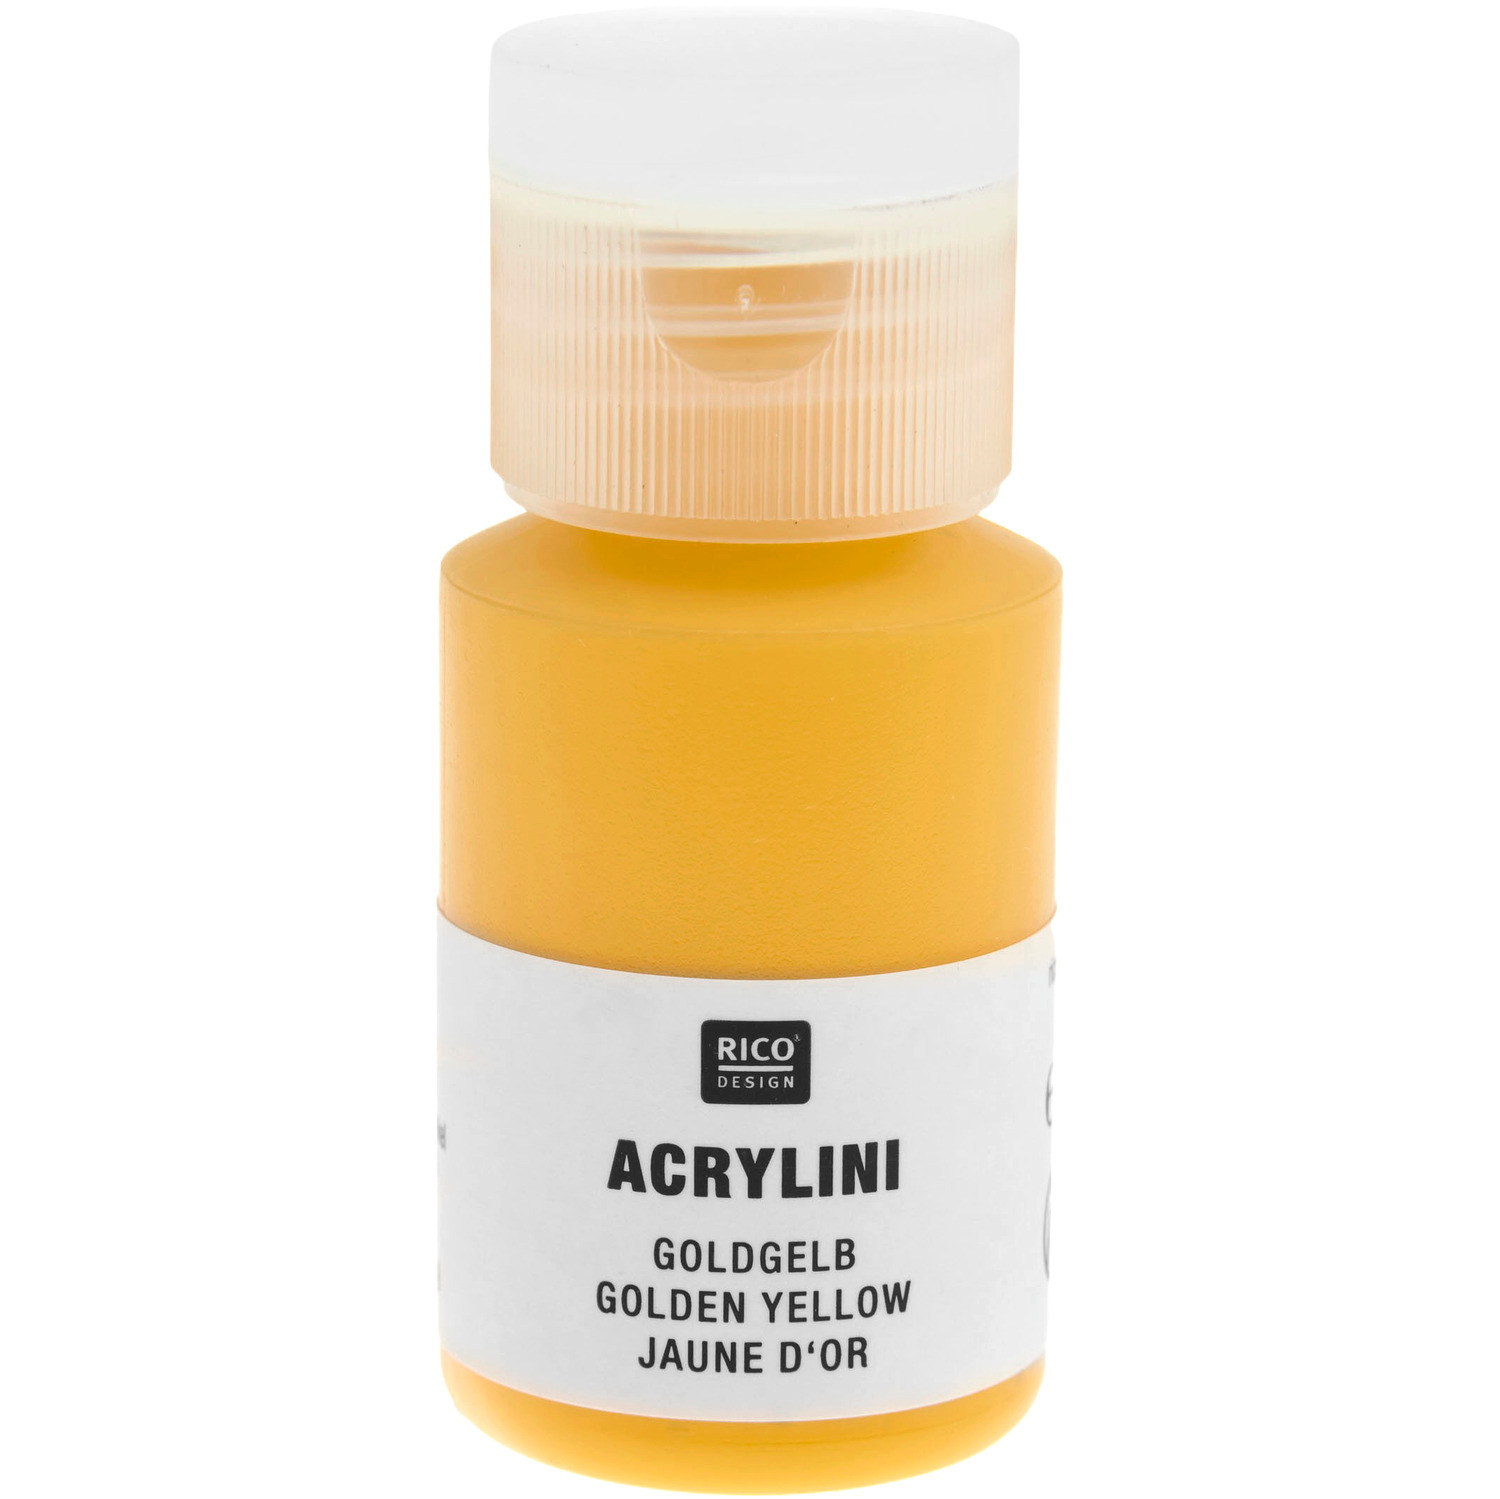 Acrylini Acrylfarbe